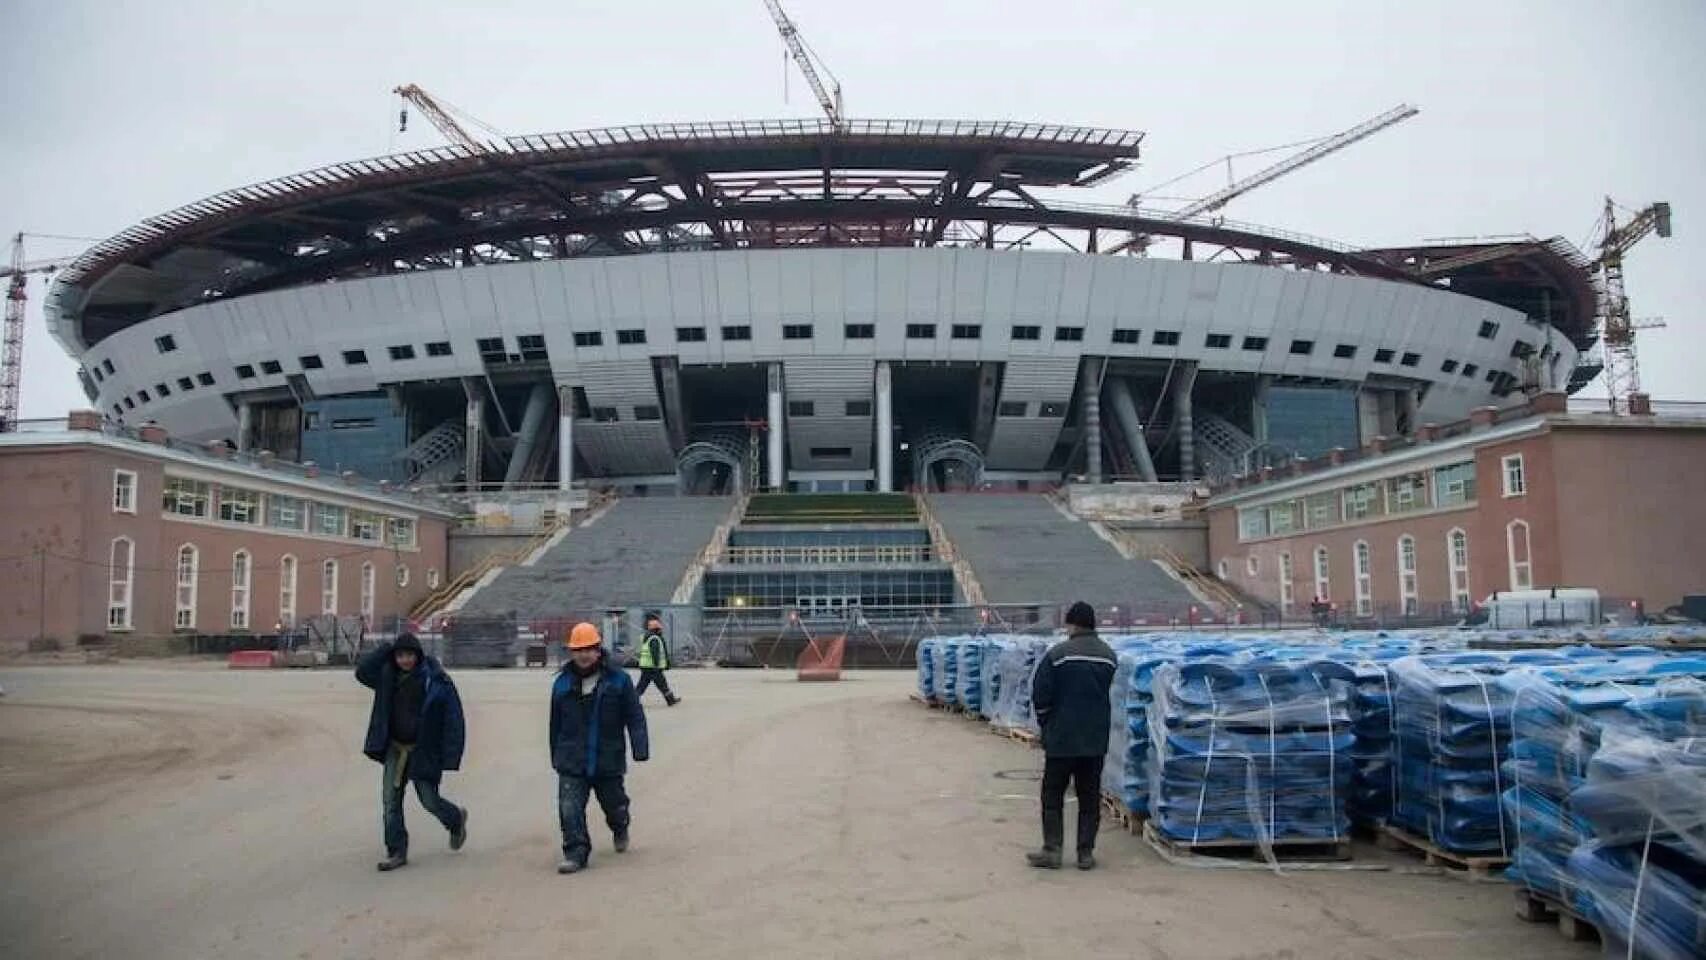 Строительство нового стадиона. Стадион Зенит стройка для ЧМ 2018. Зенит Арена выкатное поле. Каток Зенит Арена.